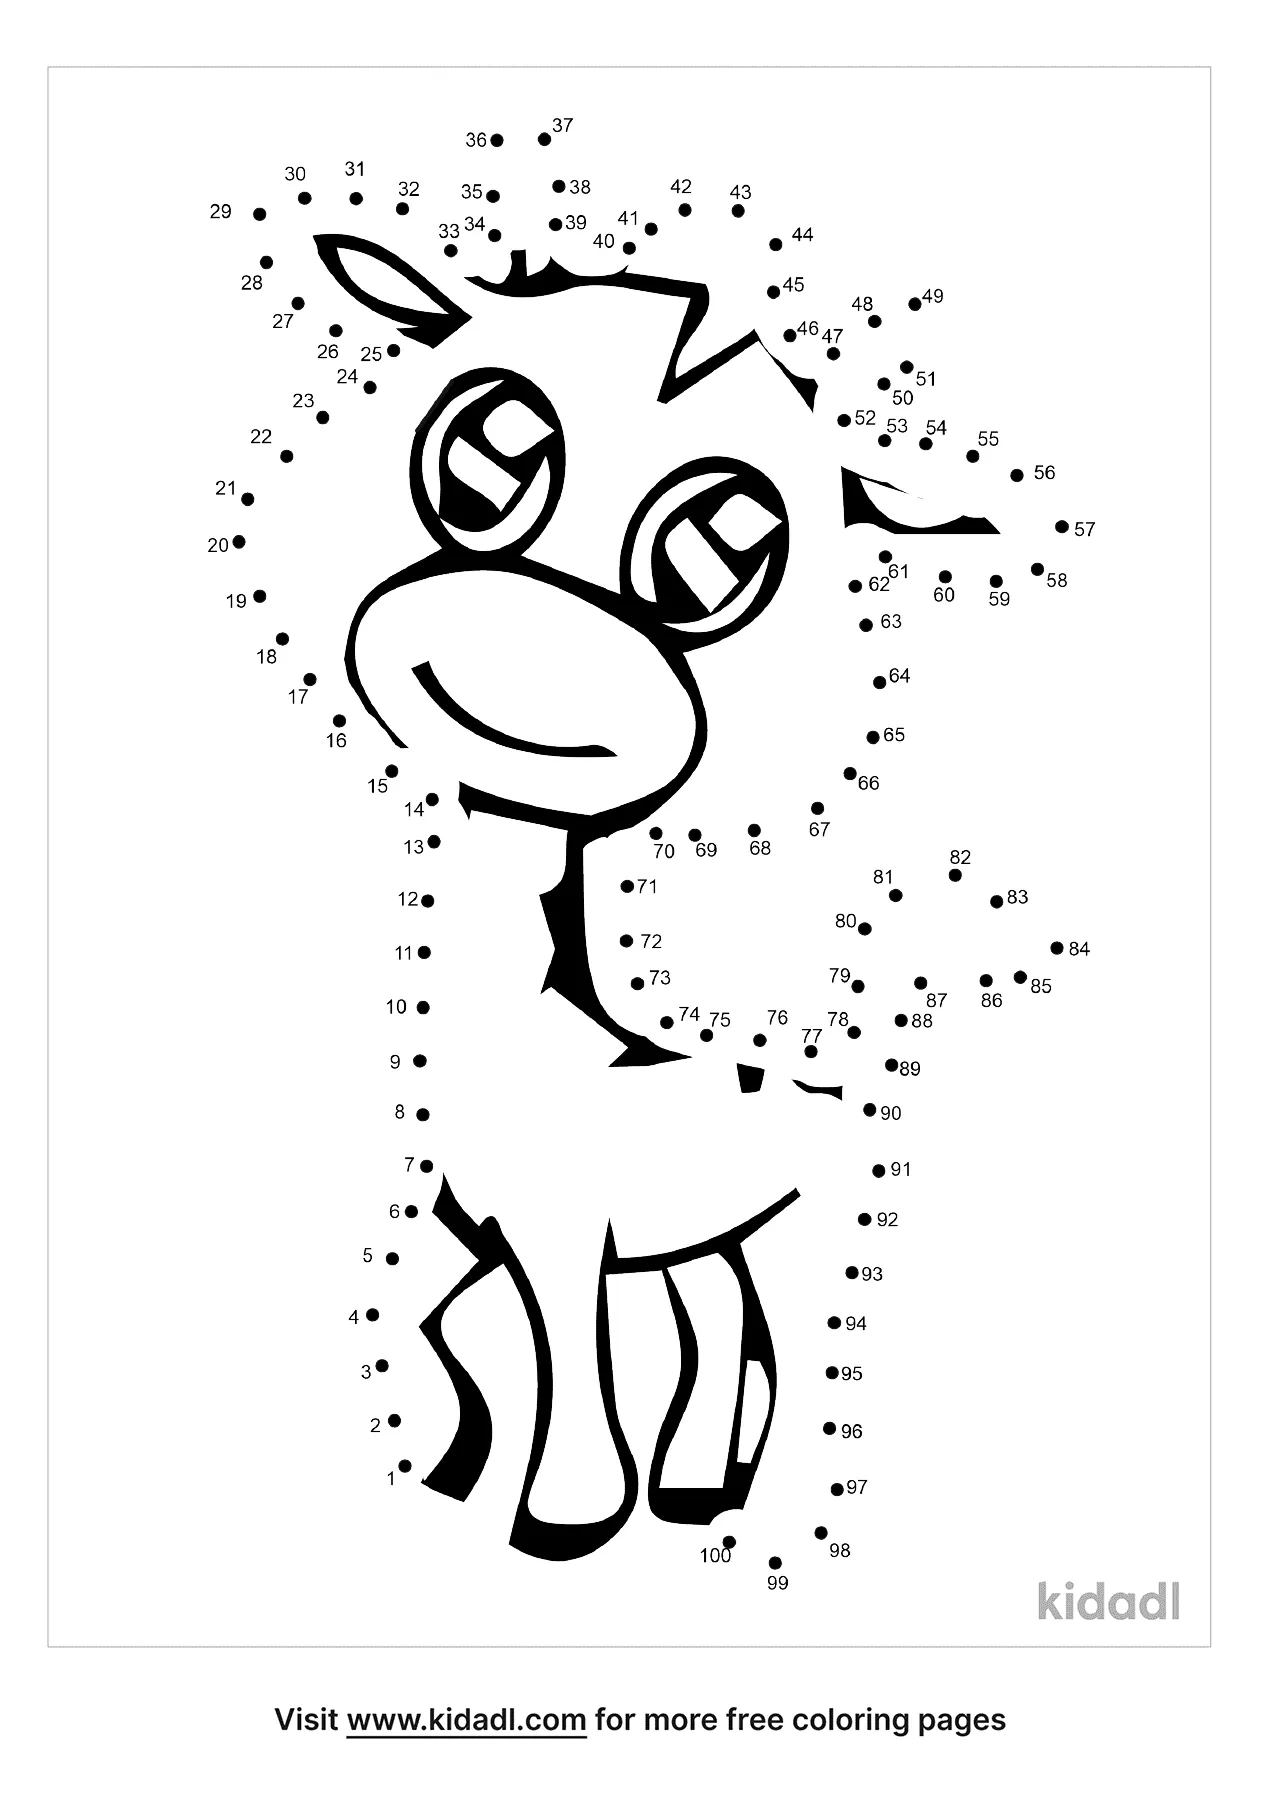 Free Cute Baby Animal Hard 1 100 Dot To Dot Printables For Kids Kidadl